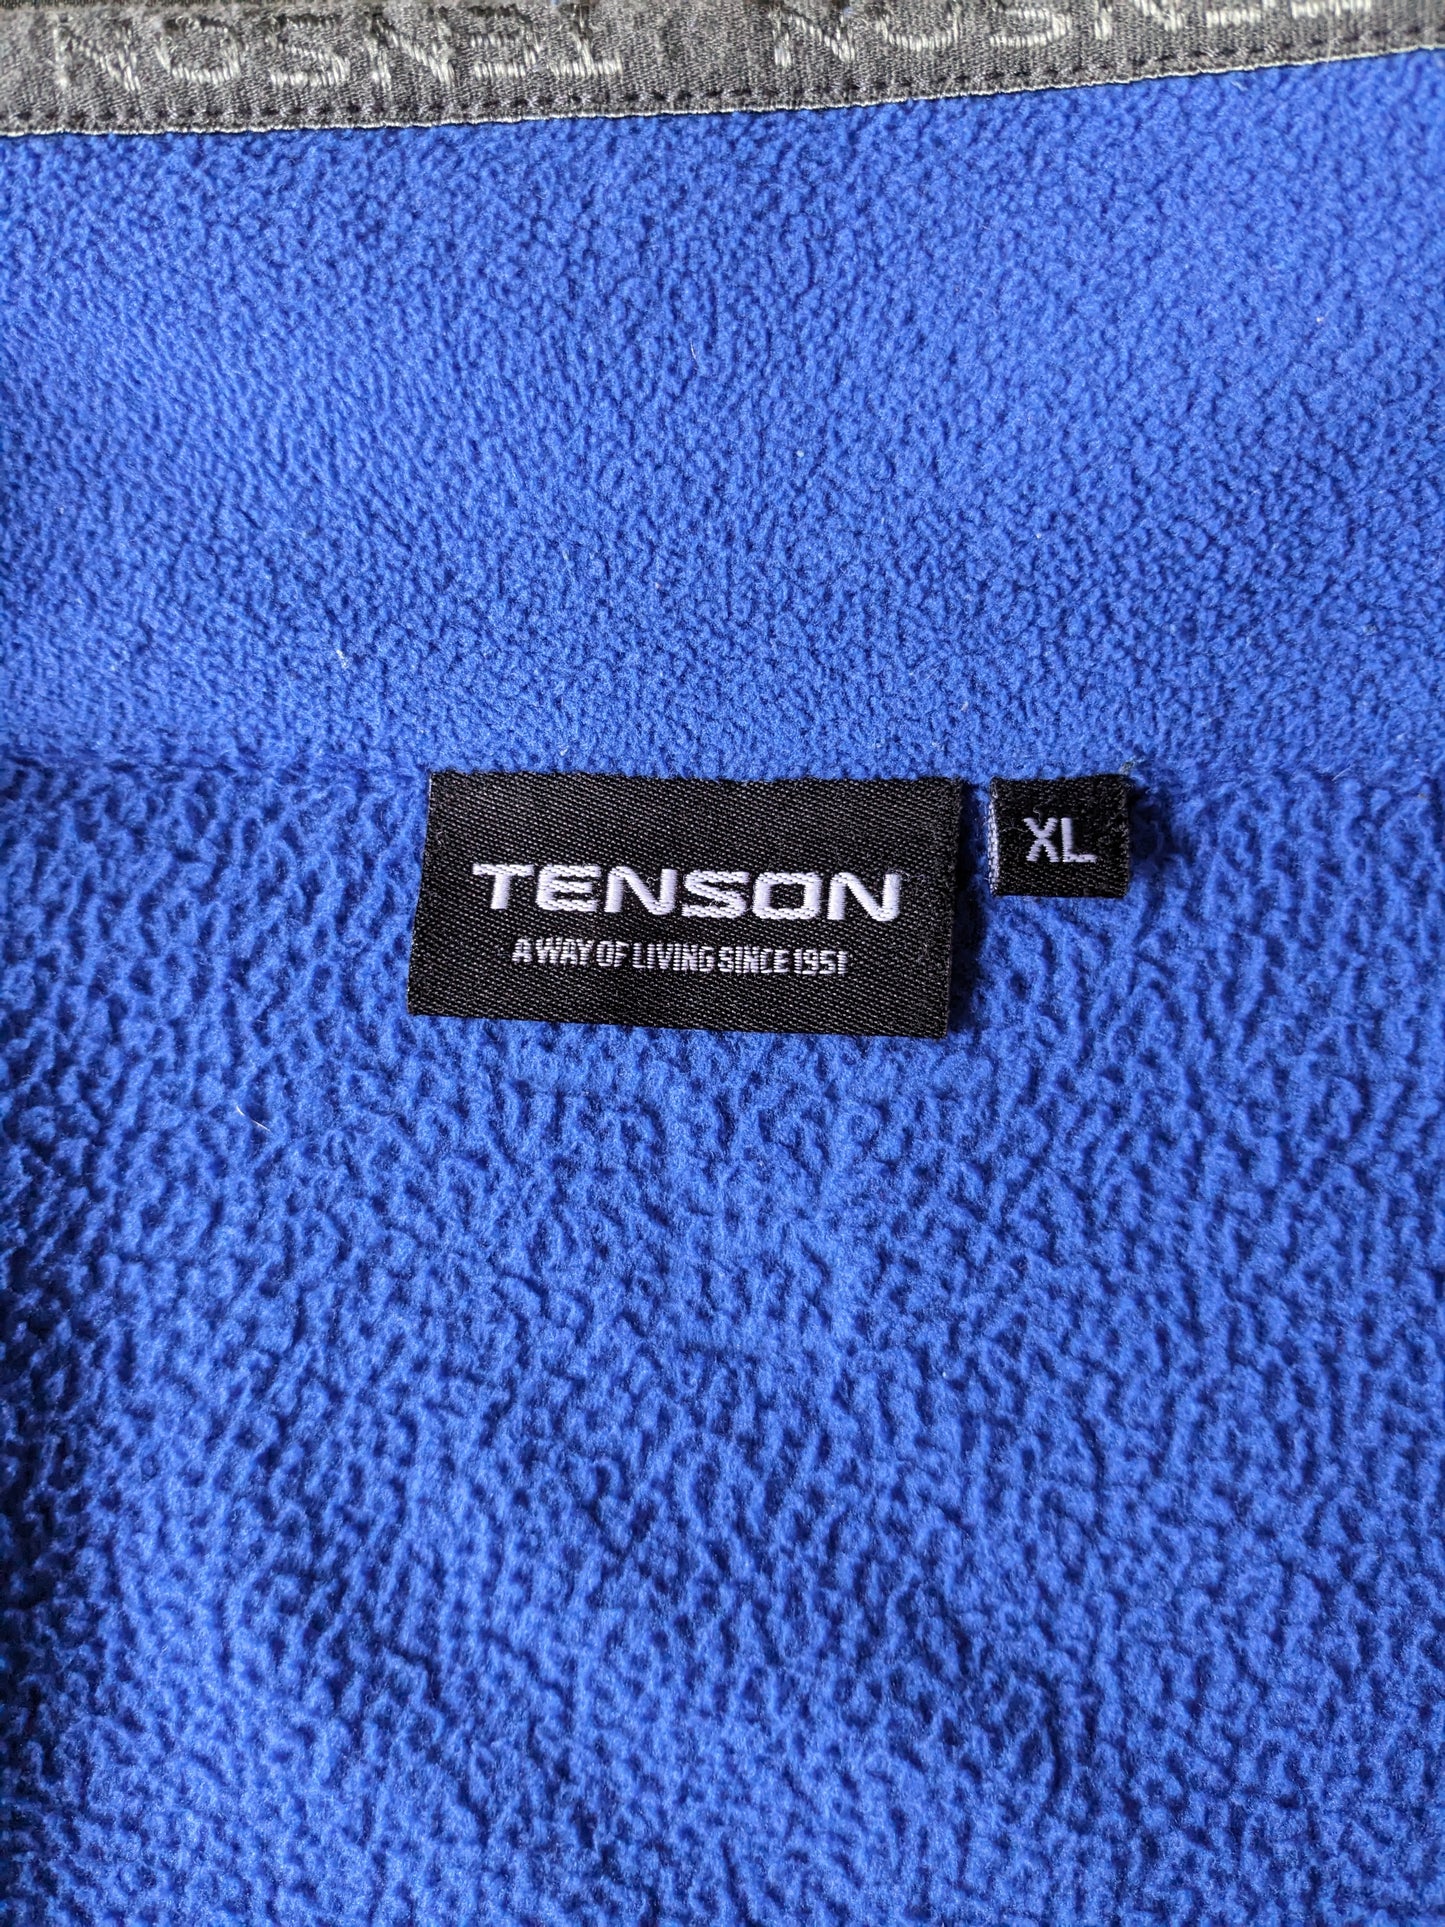 Gilet polaire Tenson. Coloré en bleu. Taille XL.